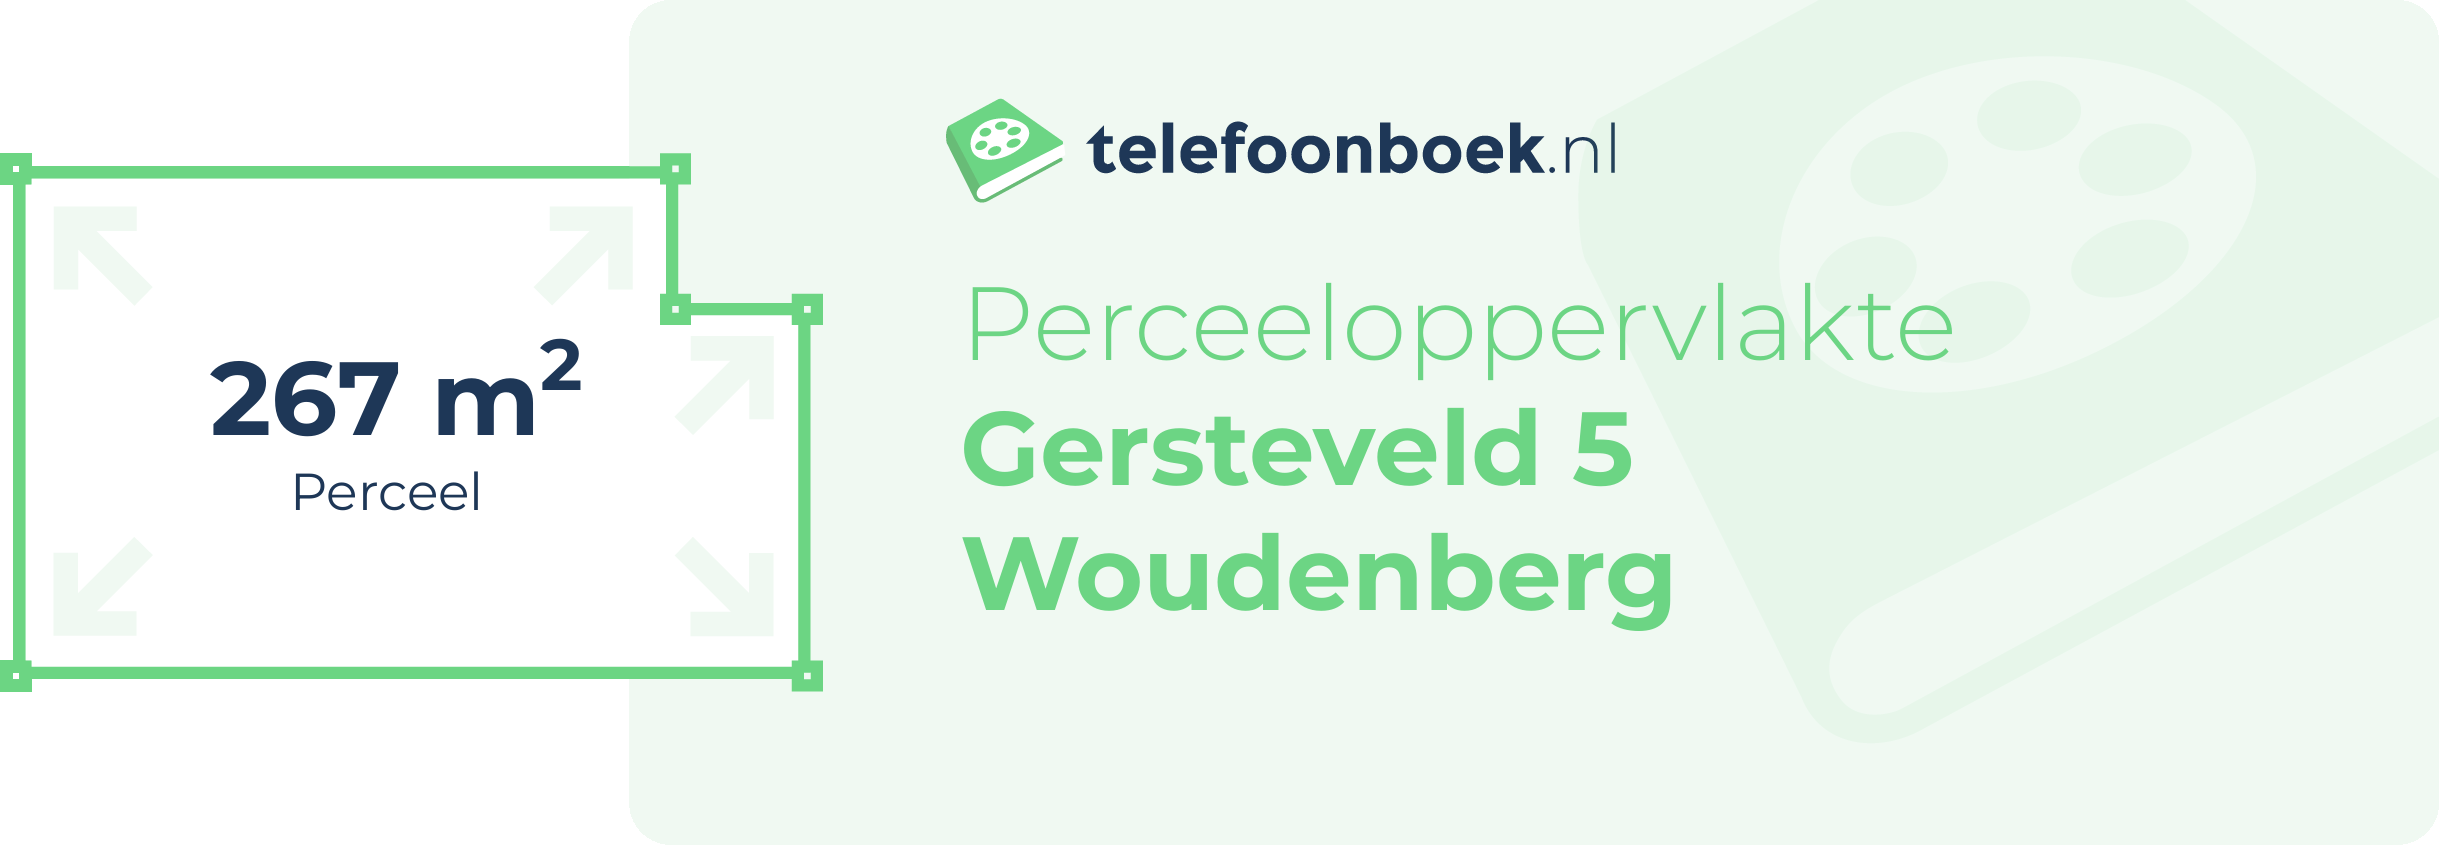 Perceeloppervlakte Gersteveld 5 Woudenberg